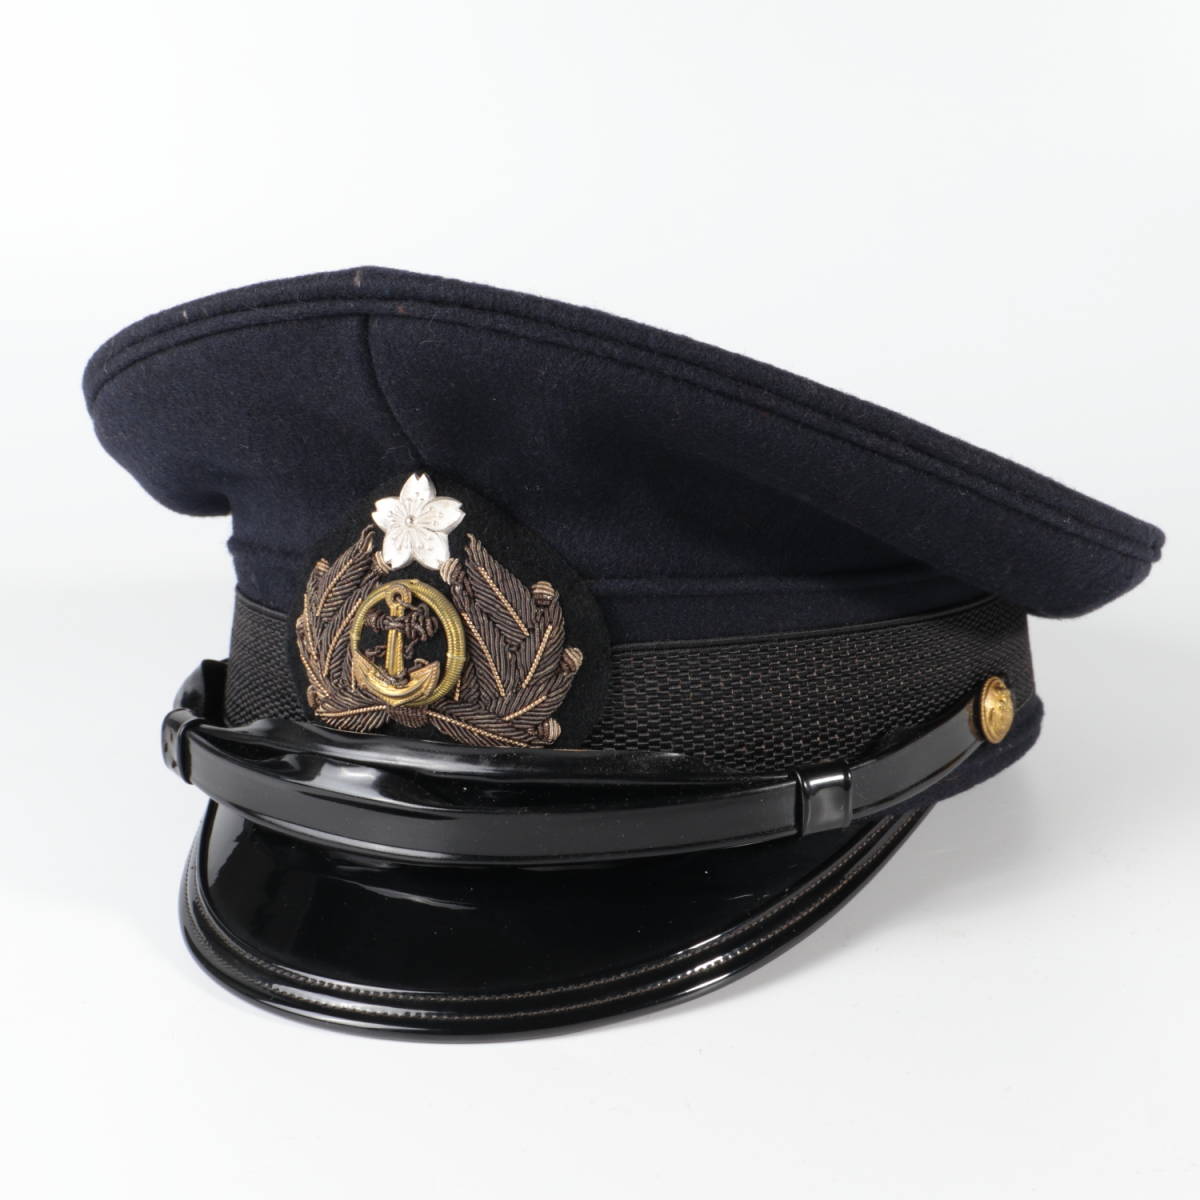 日本 海軍士官用軍帽 第二種軍装 59センチ 高田帽子店製顎紐に交換済み 